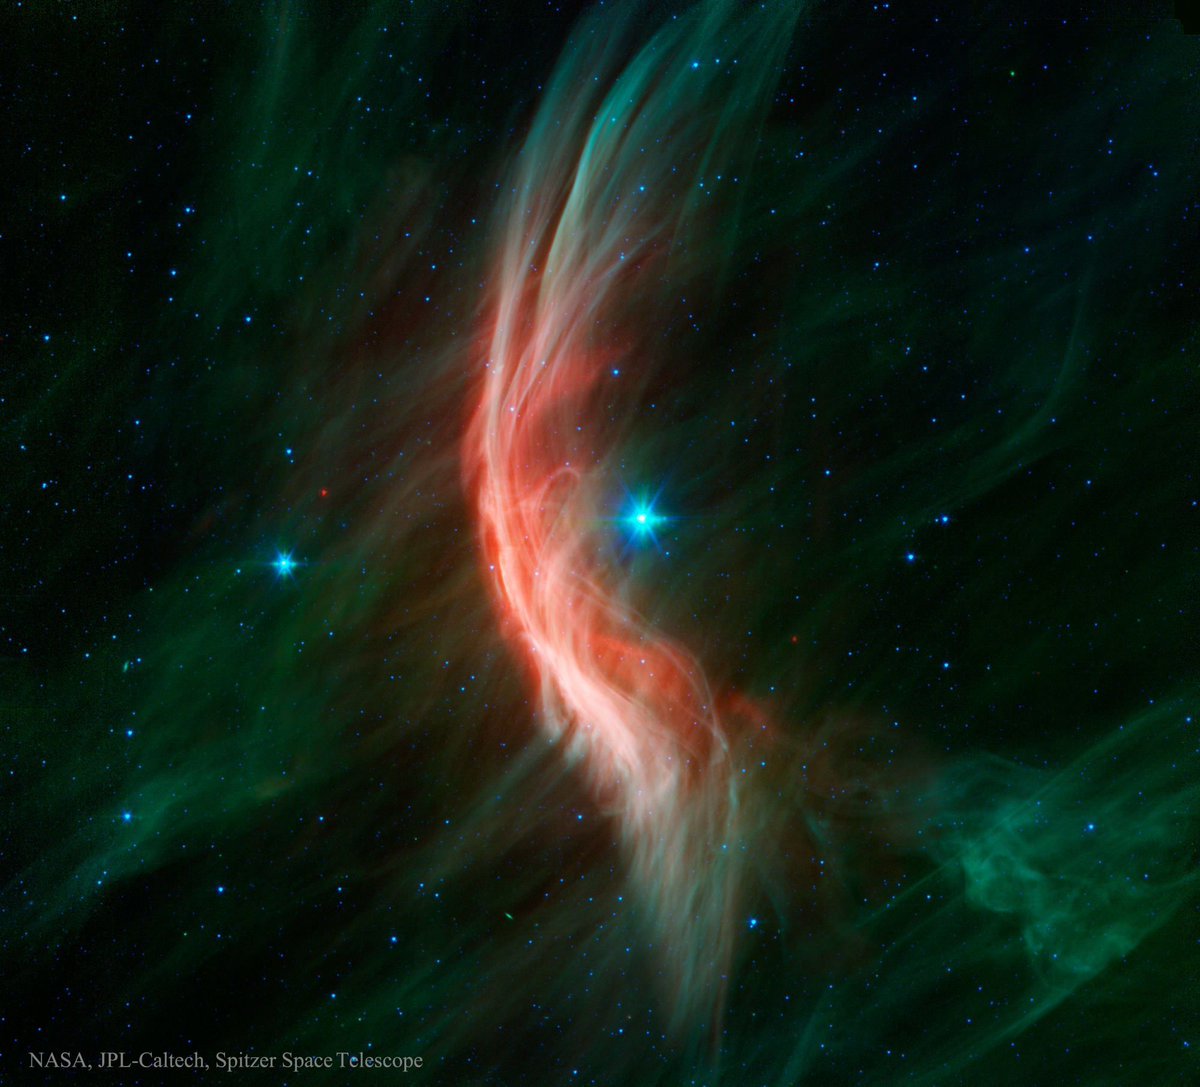 Este espectacular arco de choque es producto de la estrella Zeta Ophiuchi (en el centro). Es 20 veces más masiva que el Sol, y se mueve hacia la izquierda a 24 km/s. Por delante, su viento estelar comprime y calienta el material, formando el arco que observamos. #FelizSabado